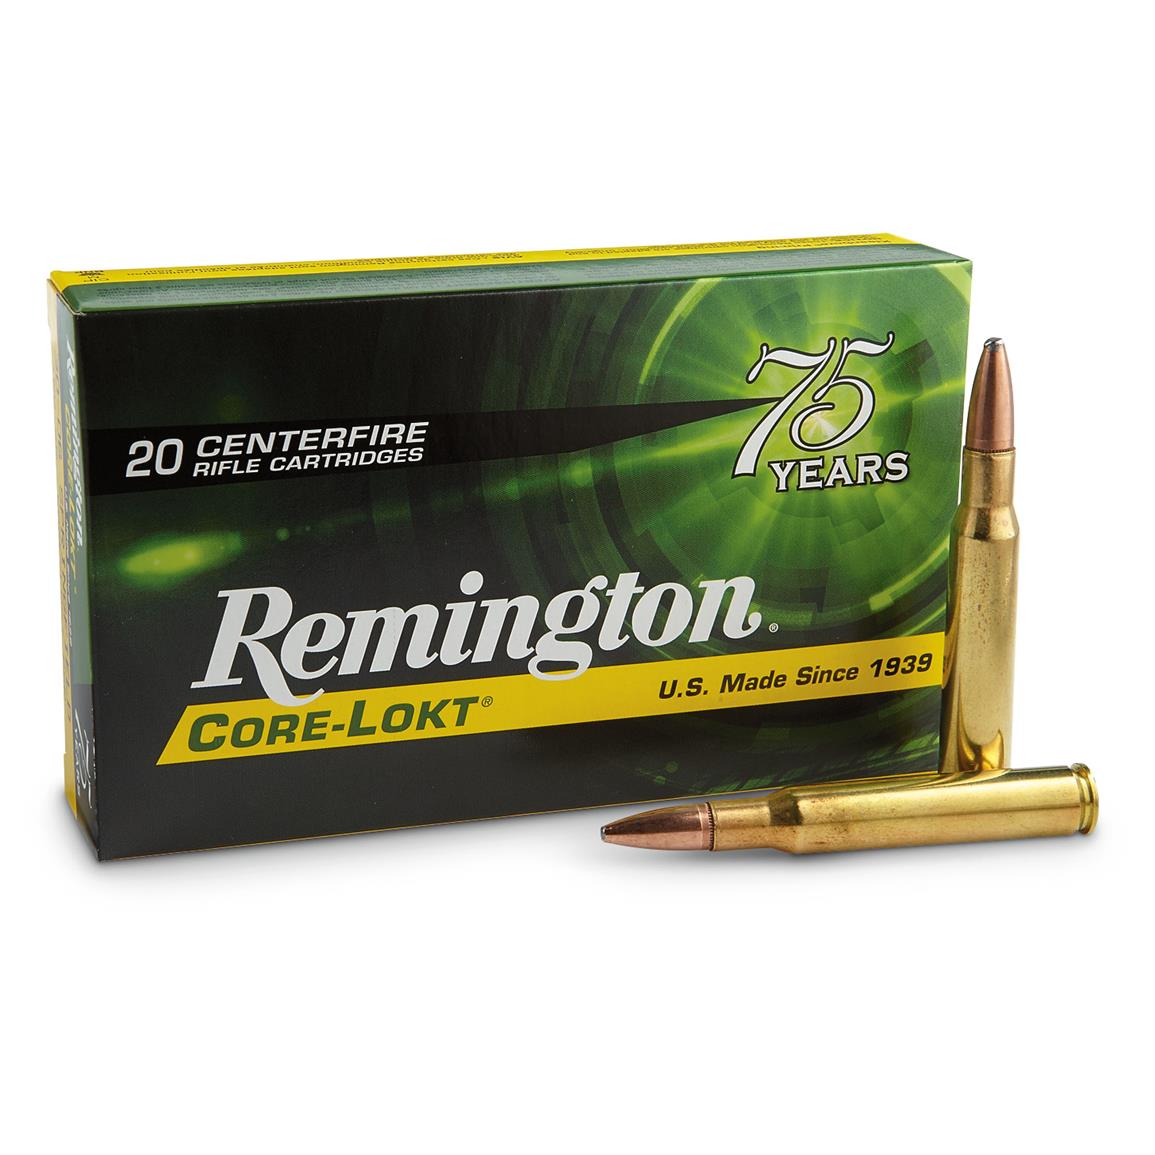 Remington CORE-LOKT, .30-06 Springfield, PSP, 180 Grain Of 500 Rounds.